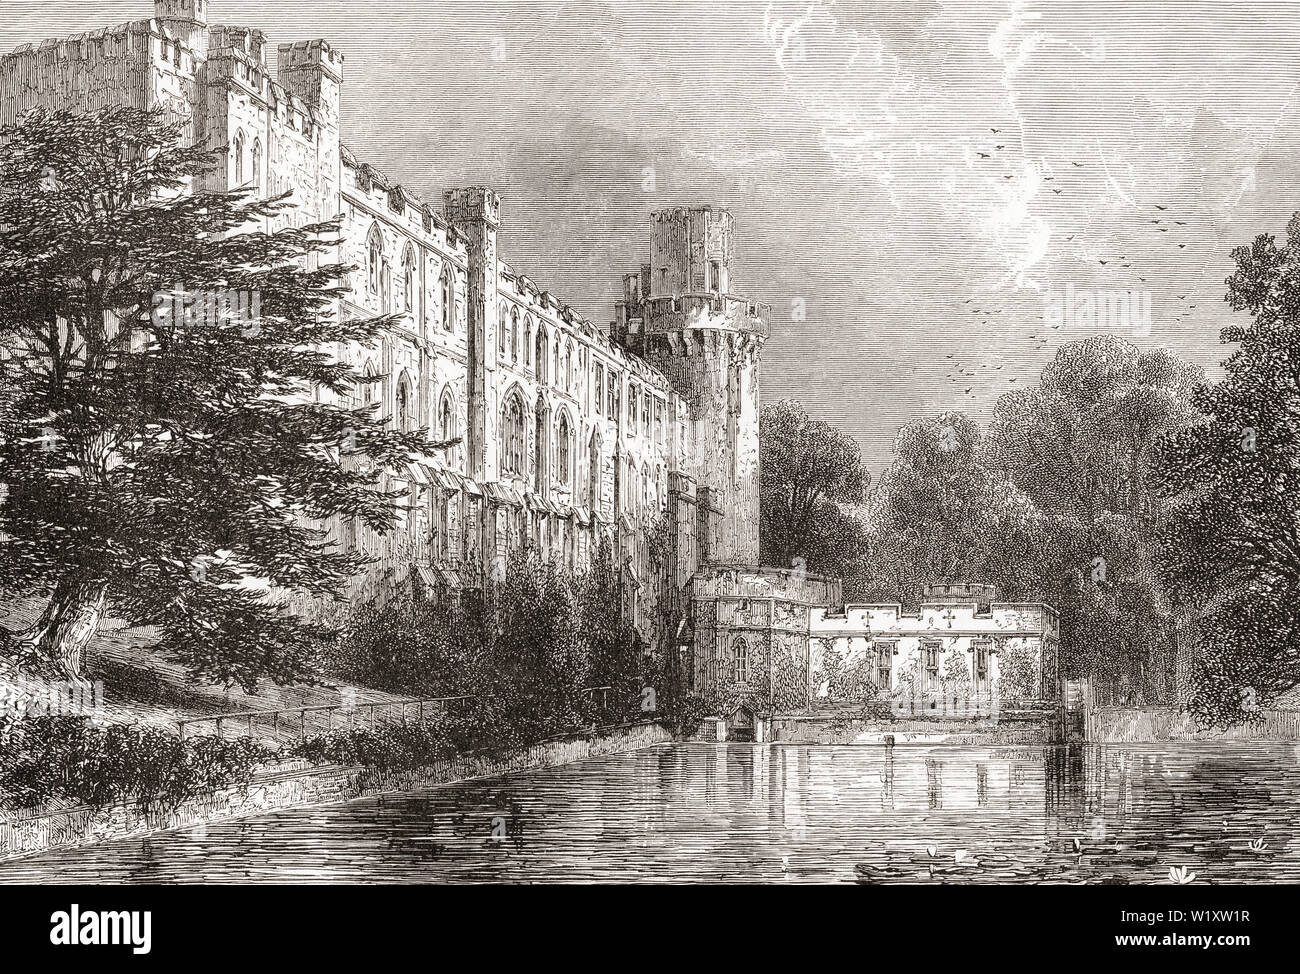 Warwick Castle, Warwick, Warwickshire, England, hier im 19. Jahrhundert. Aus dem Englischen Bilder, veröffentlicht 1890. Stockfoto